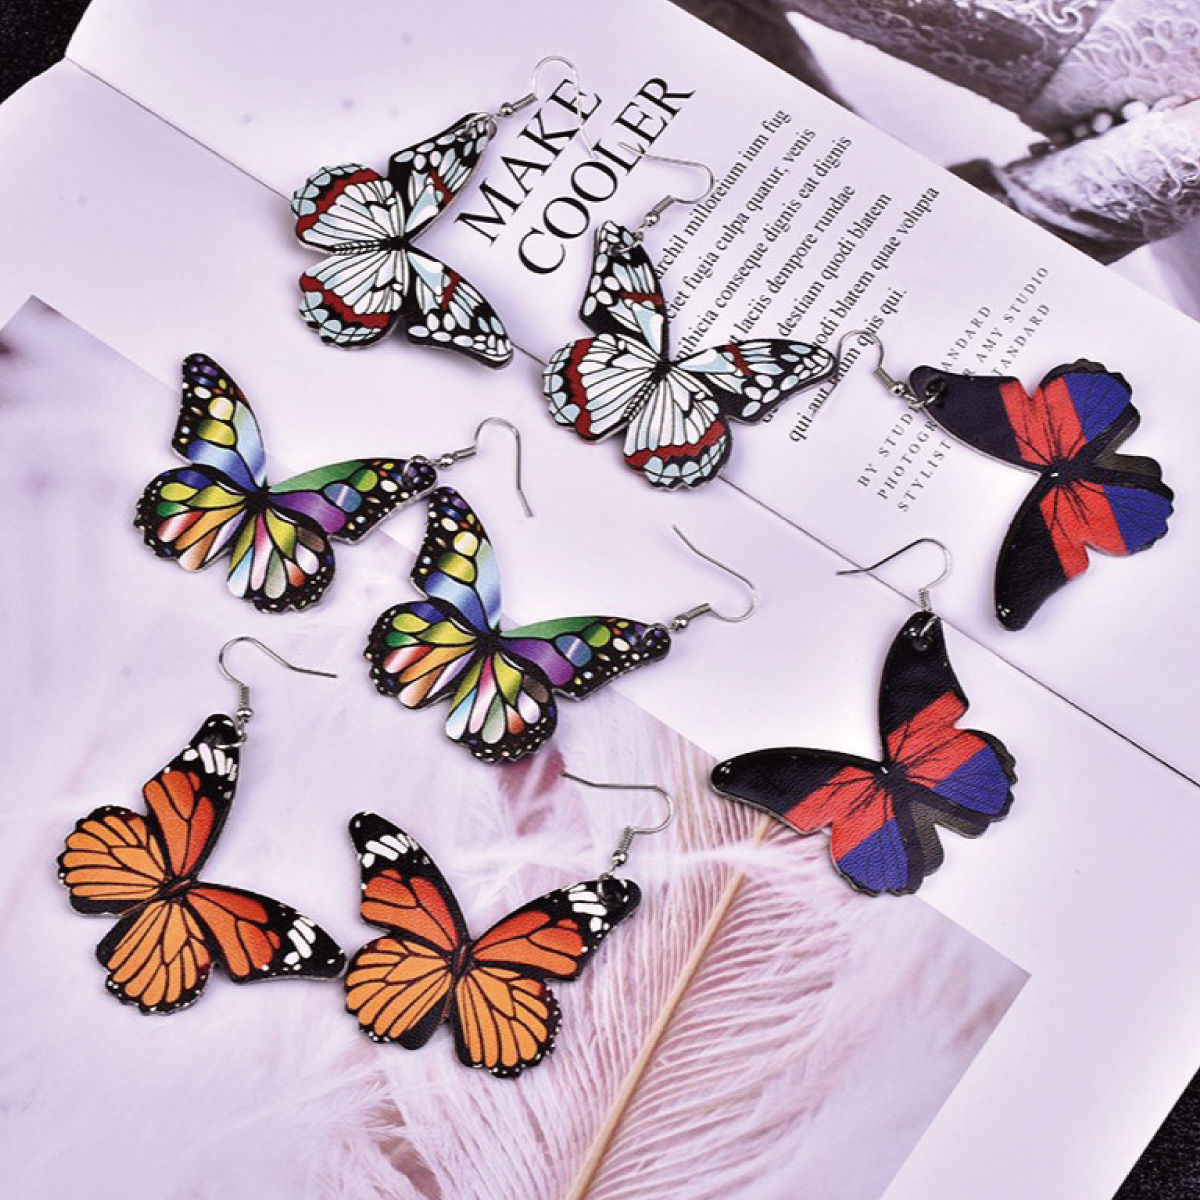 フックピアス レディース 蝶 バタフライ 大ぶり 揺れる 個性的 ユニーク インパクト かわいい